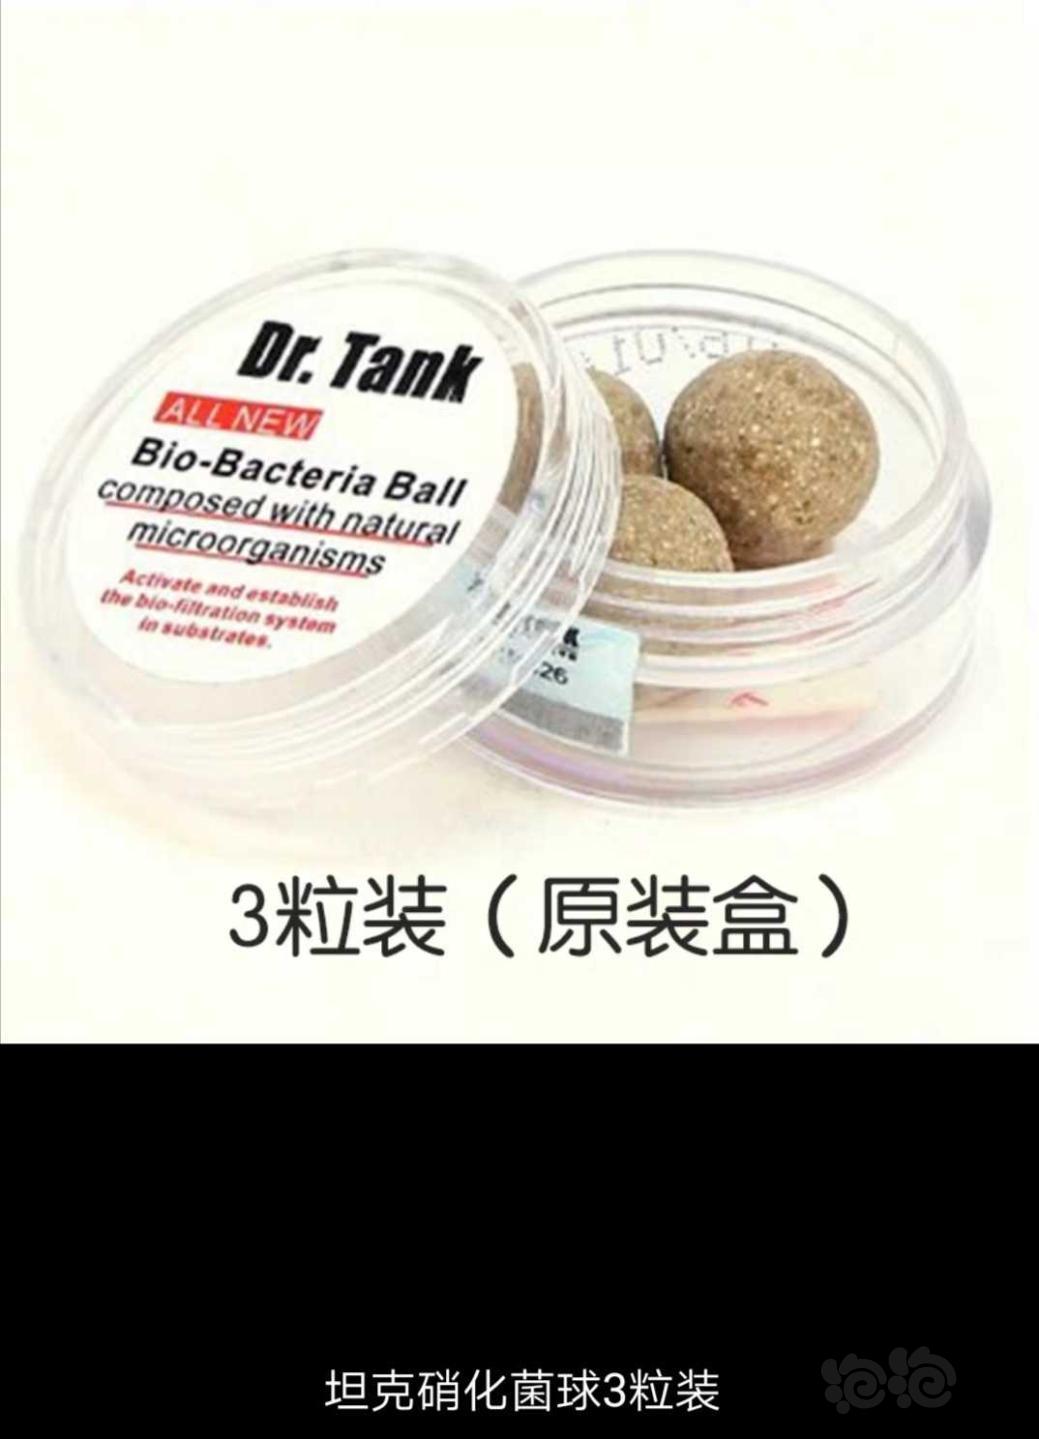 【用品】2019-11-06#RMB拍卖坦克二代硝化细菌球三粒装*3盒-图1